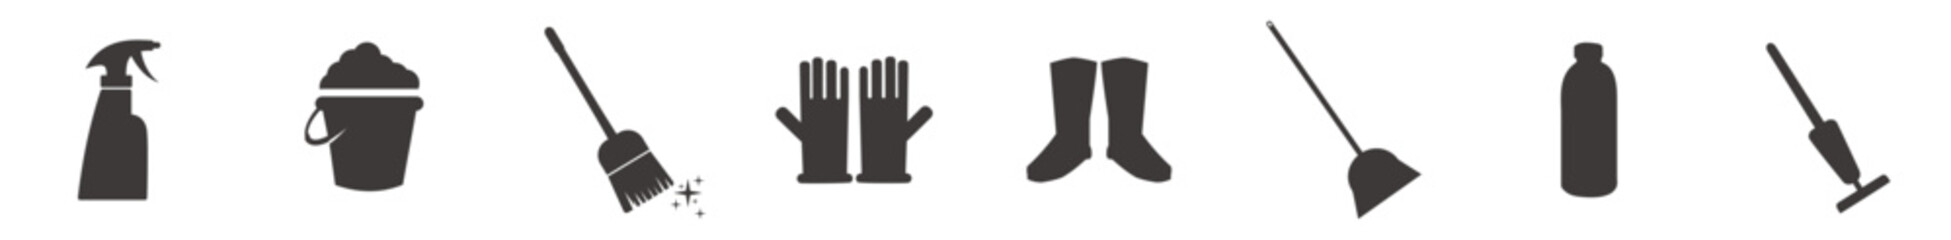 Floor mop icons. Mop, Bucket, gloves, boot, cleaner symbol. 